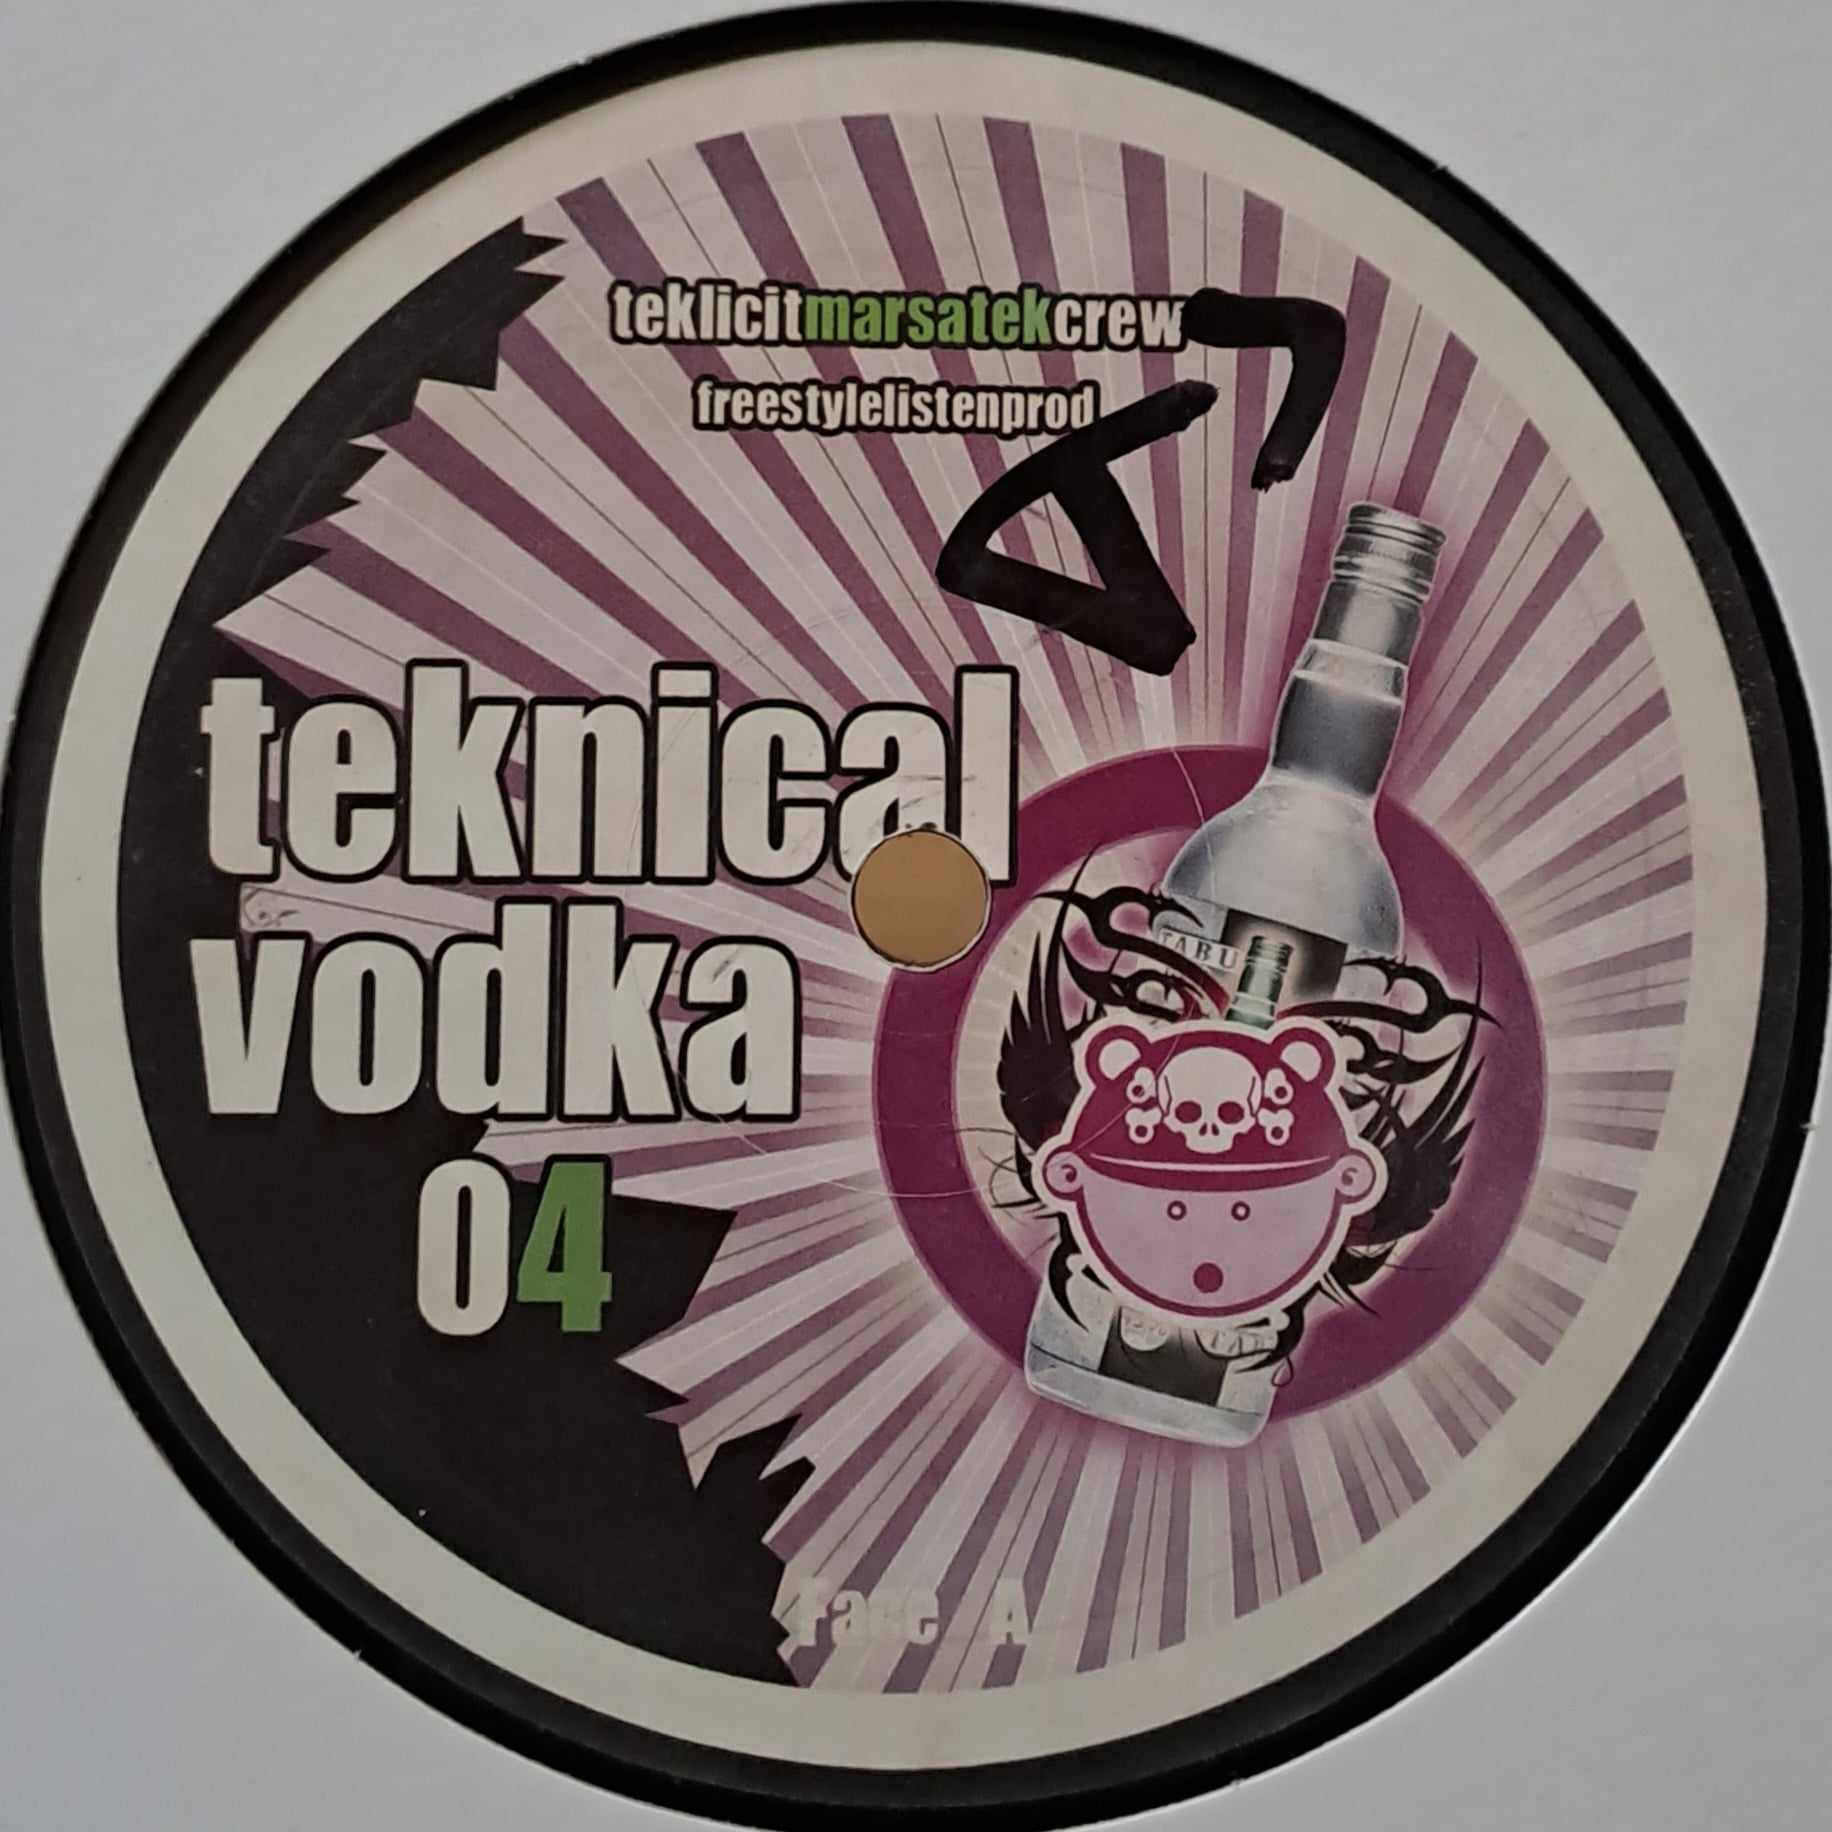 Teknical Vodka 04 - vinyle tribecore